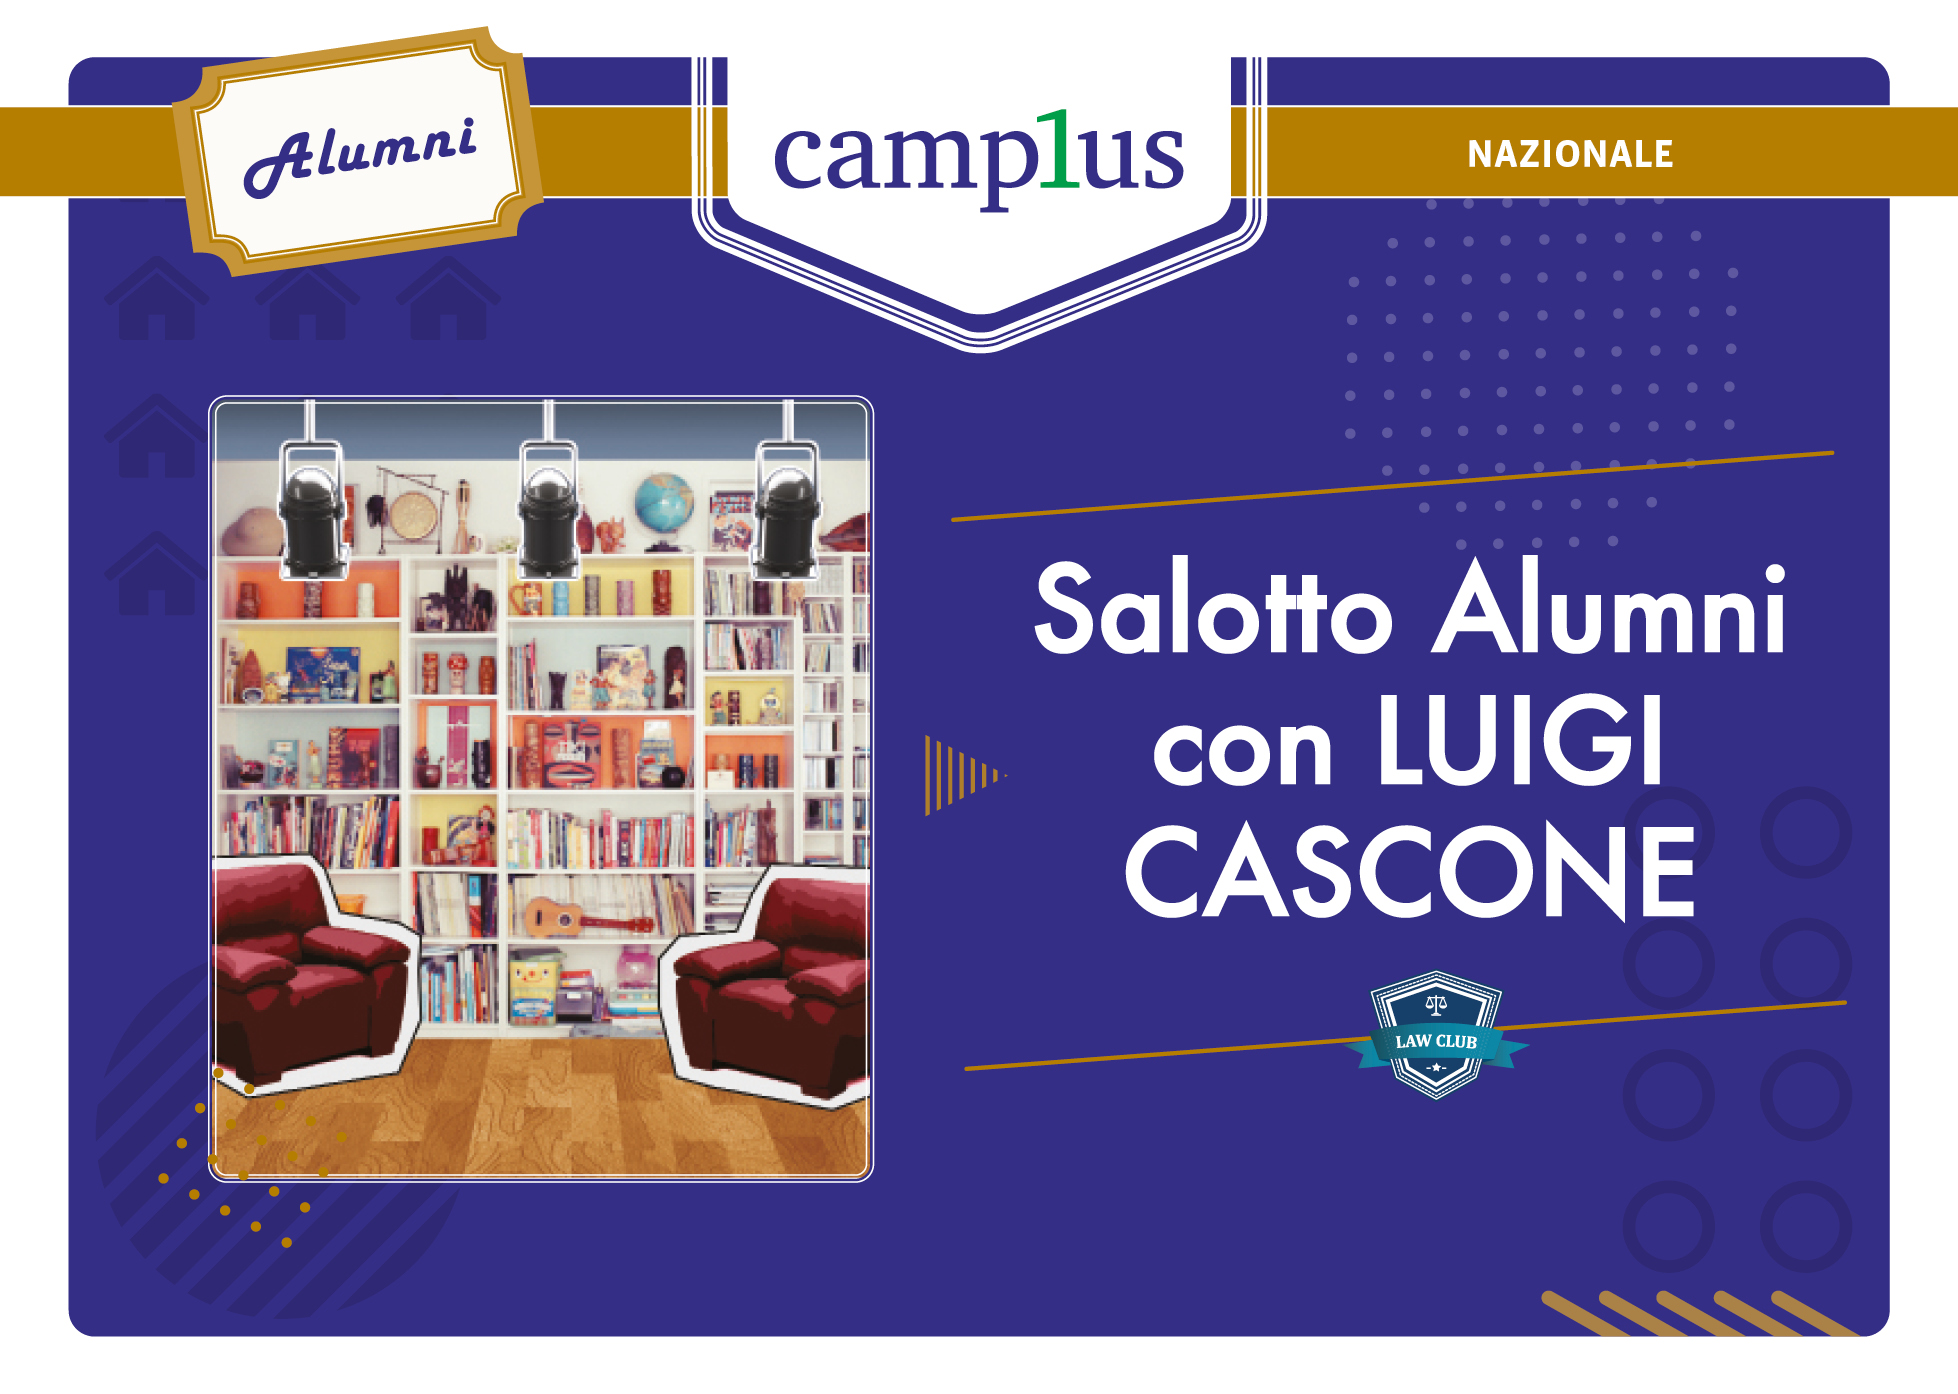 Salotto Alumni con Luigi Cascone